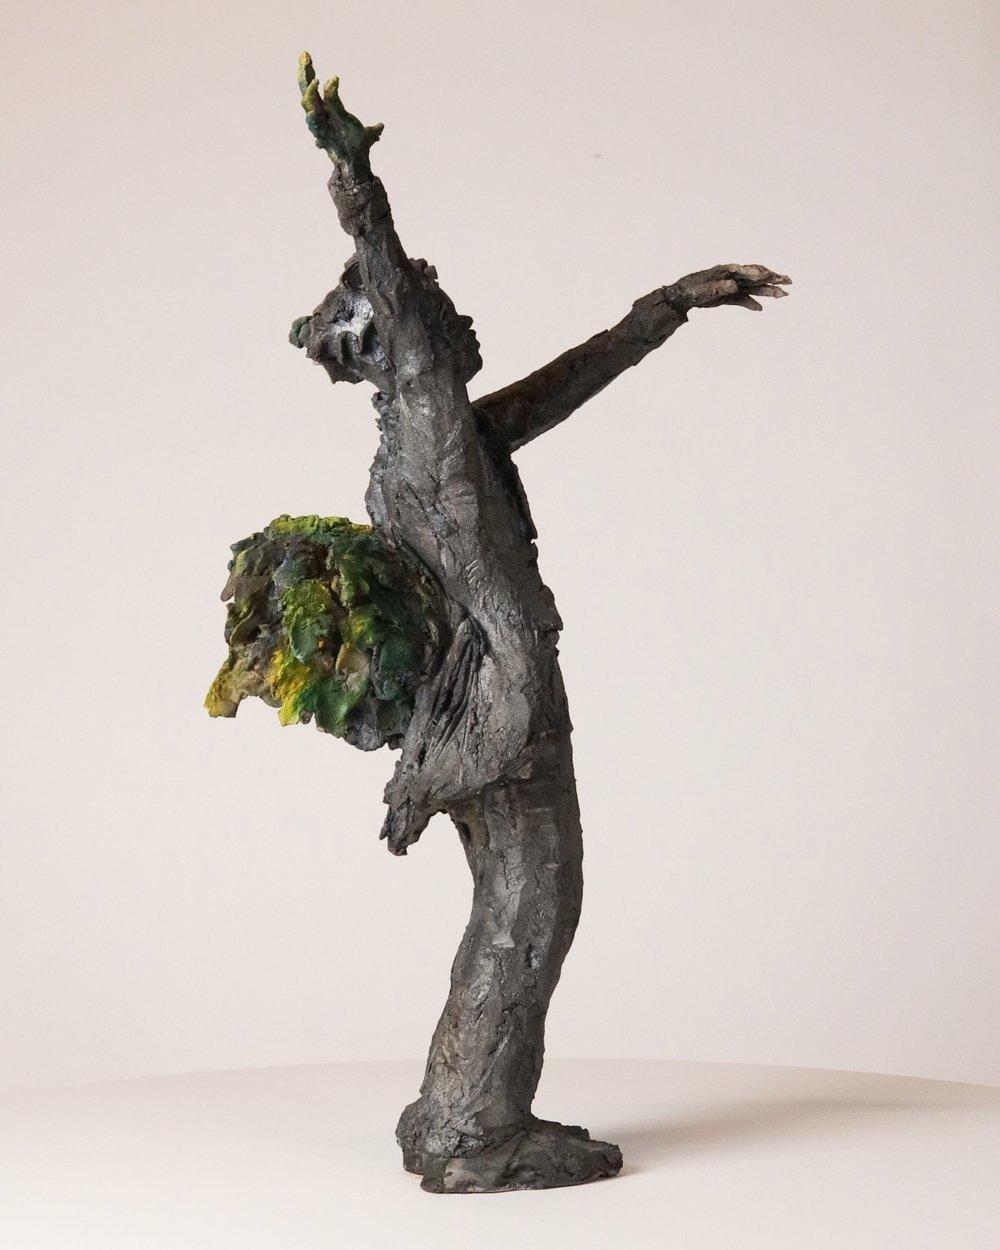 Carafe à oiseaux de Ccile Raynal - Figure masculine debout, sculpture en céramique - Beige Figurative Sculpture par Cécile Raynal